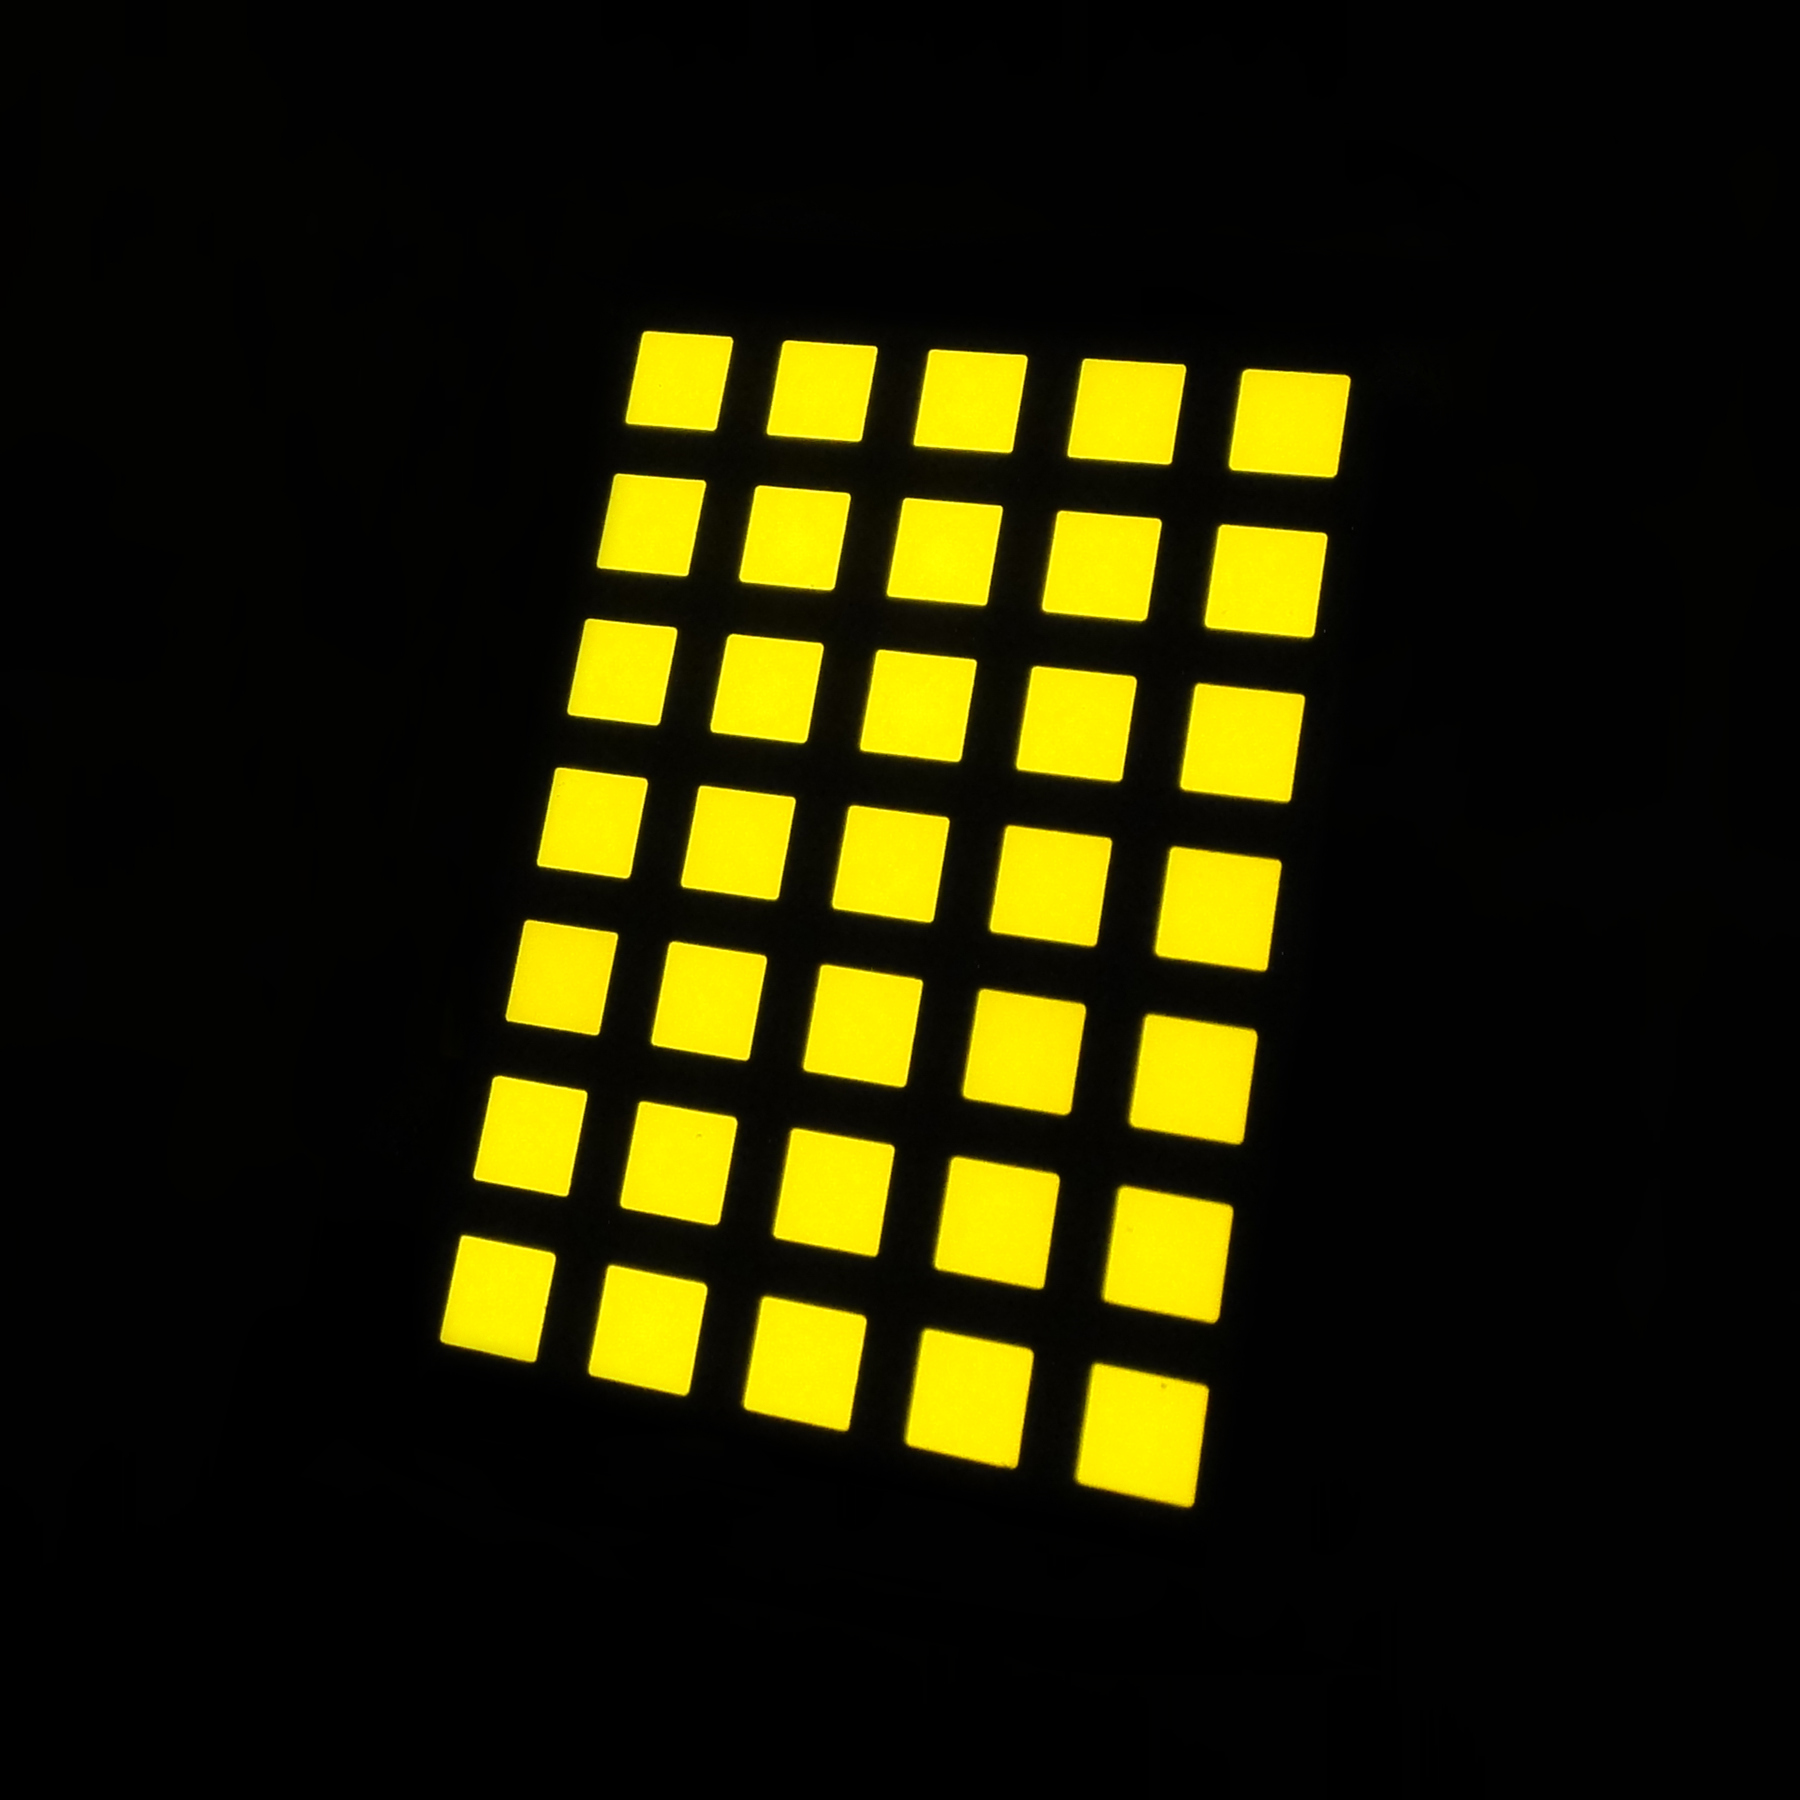 Mua Màn hình LED ma trận 1357 chấm vuông nhỏ 5x7,Màn hình LED ma trận 1357 chấm vuông nhỏ 5x7 Giá ,Màn hình LED ma trận 1357 chấm vuông nhỏ 5x7 Brands,Màn hình LED ma trận 1357 chấm vuông nhỏ 5x7 Nhà sản xuất,Màn hình LED ma trận 1357 chấm vuông nhỏ 5x7 Quotes,Màn hình LED ma trận 1357 chấm vuông nhỏ 5x7 Công ty